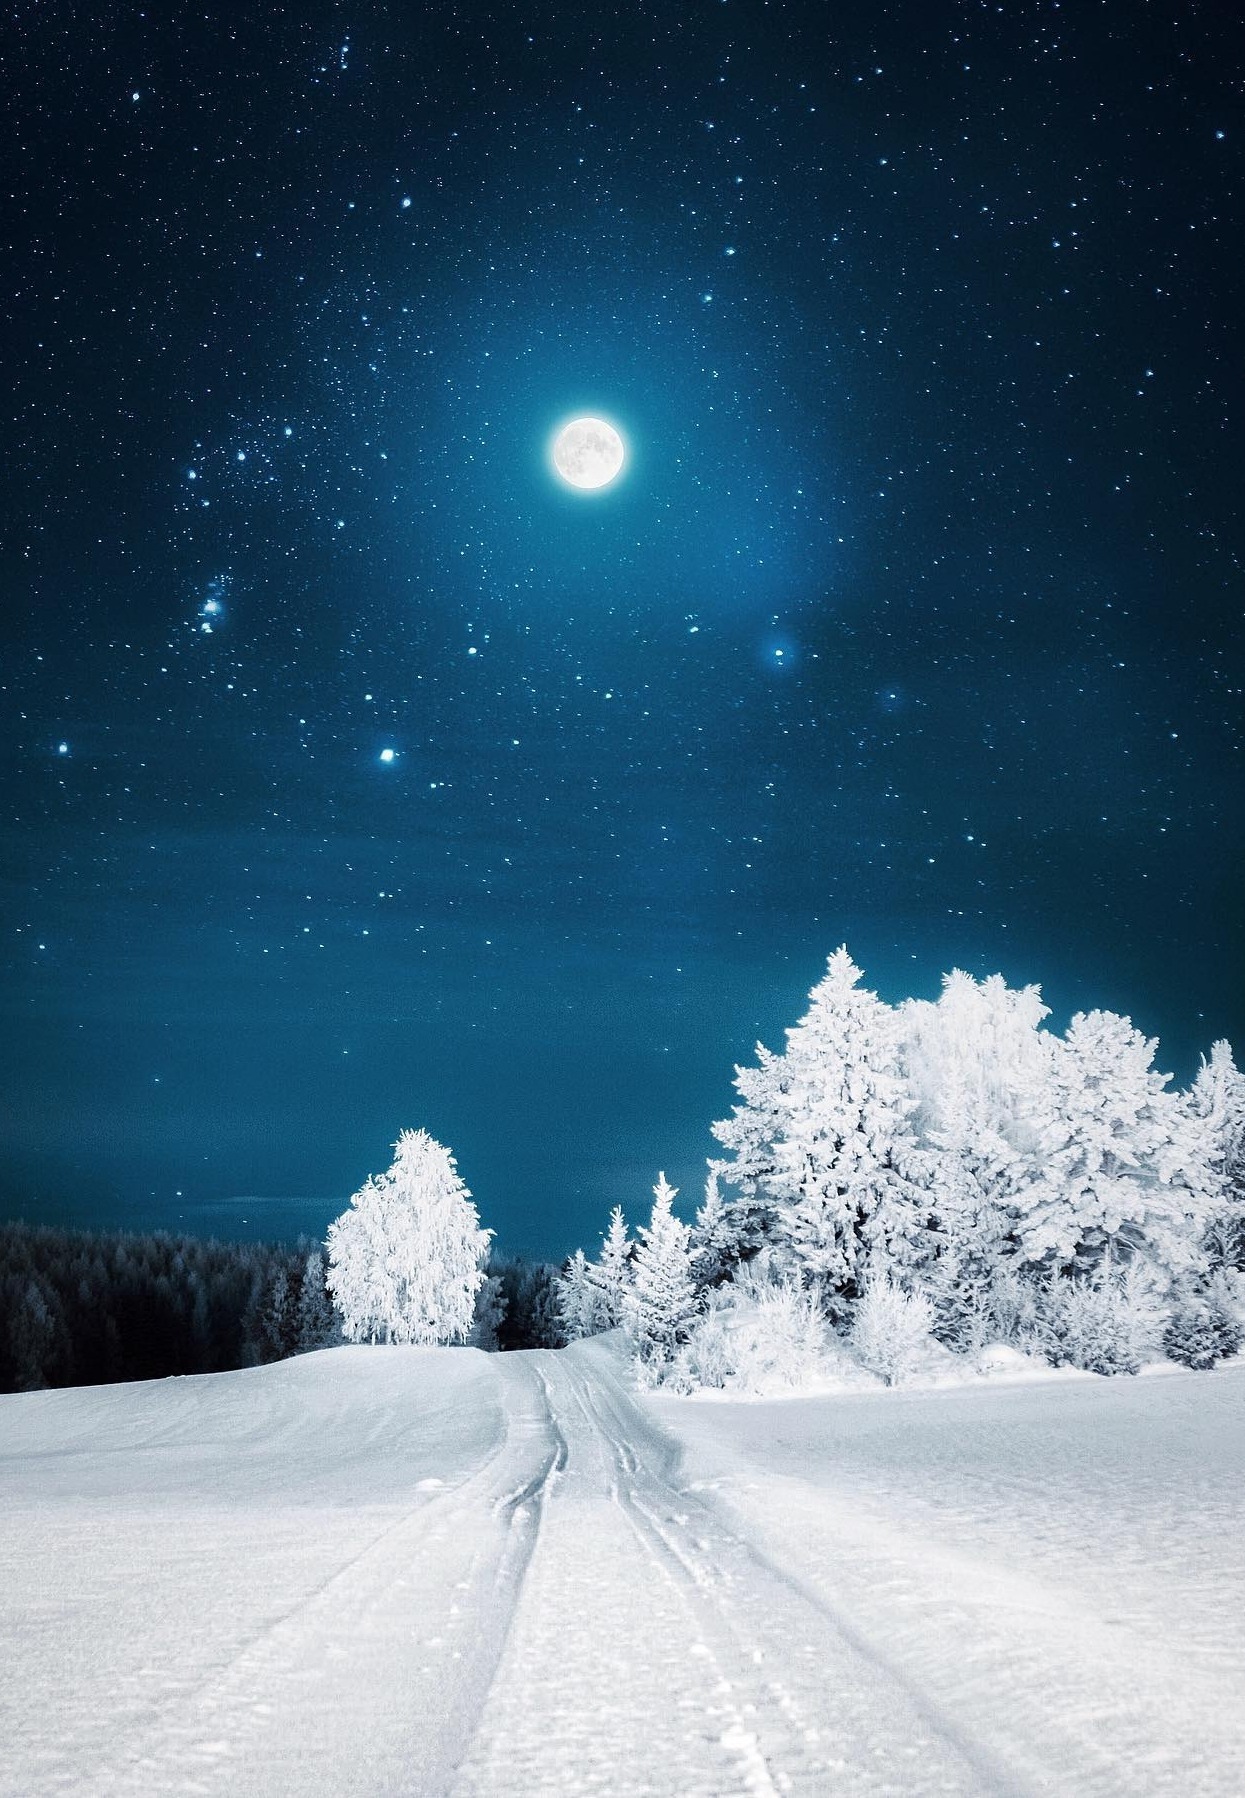 Природа Зимняя дорога. Какая простая красота. Не верится что это фото. И всю эту красоту освещает полная луна.